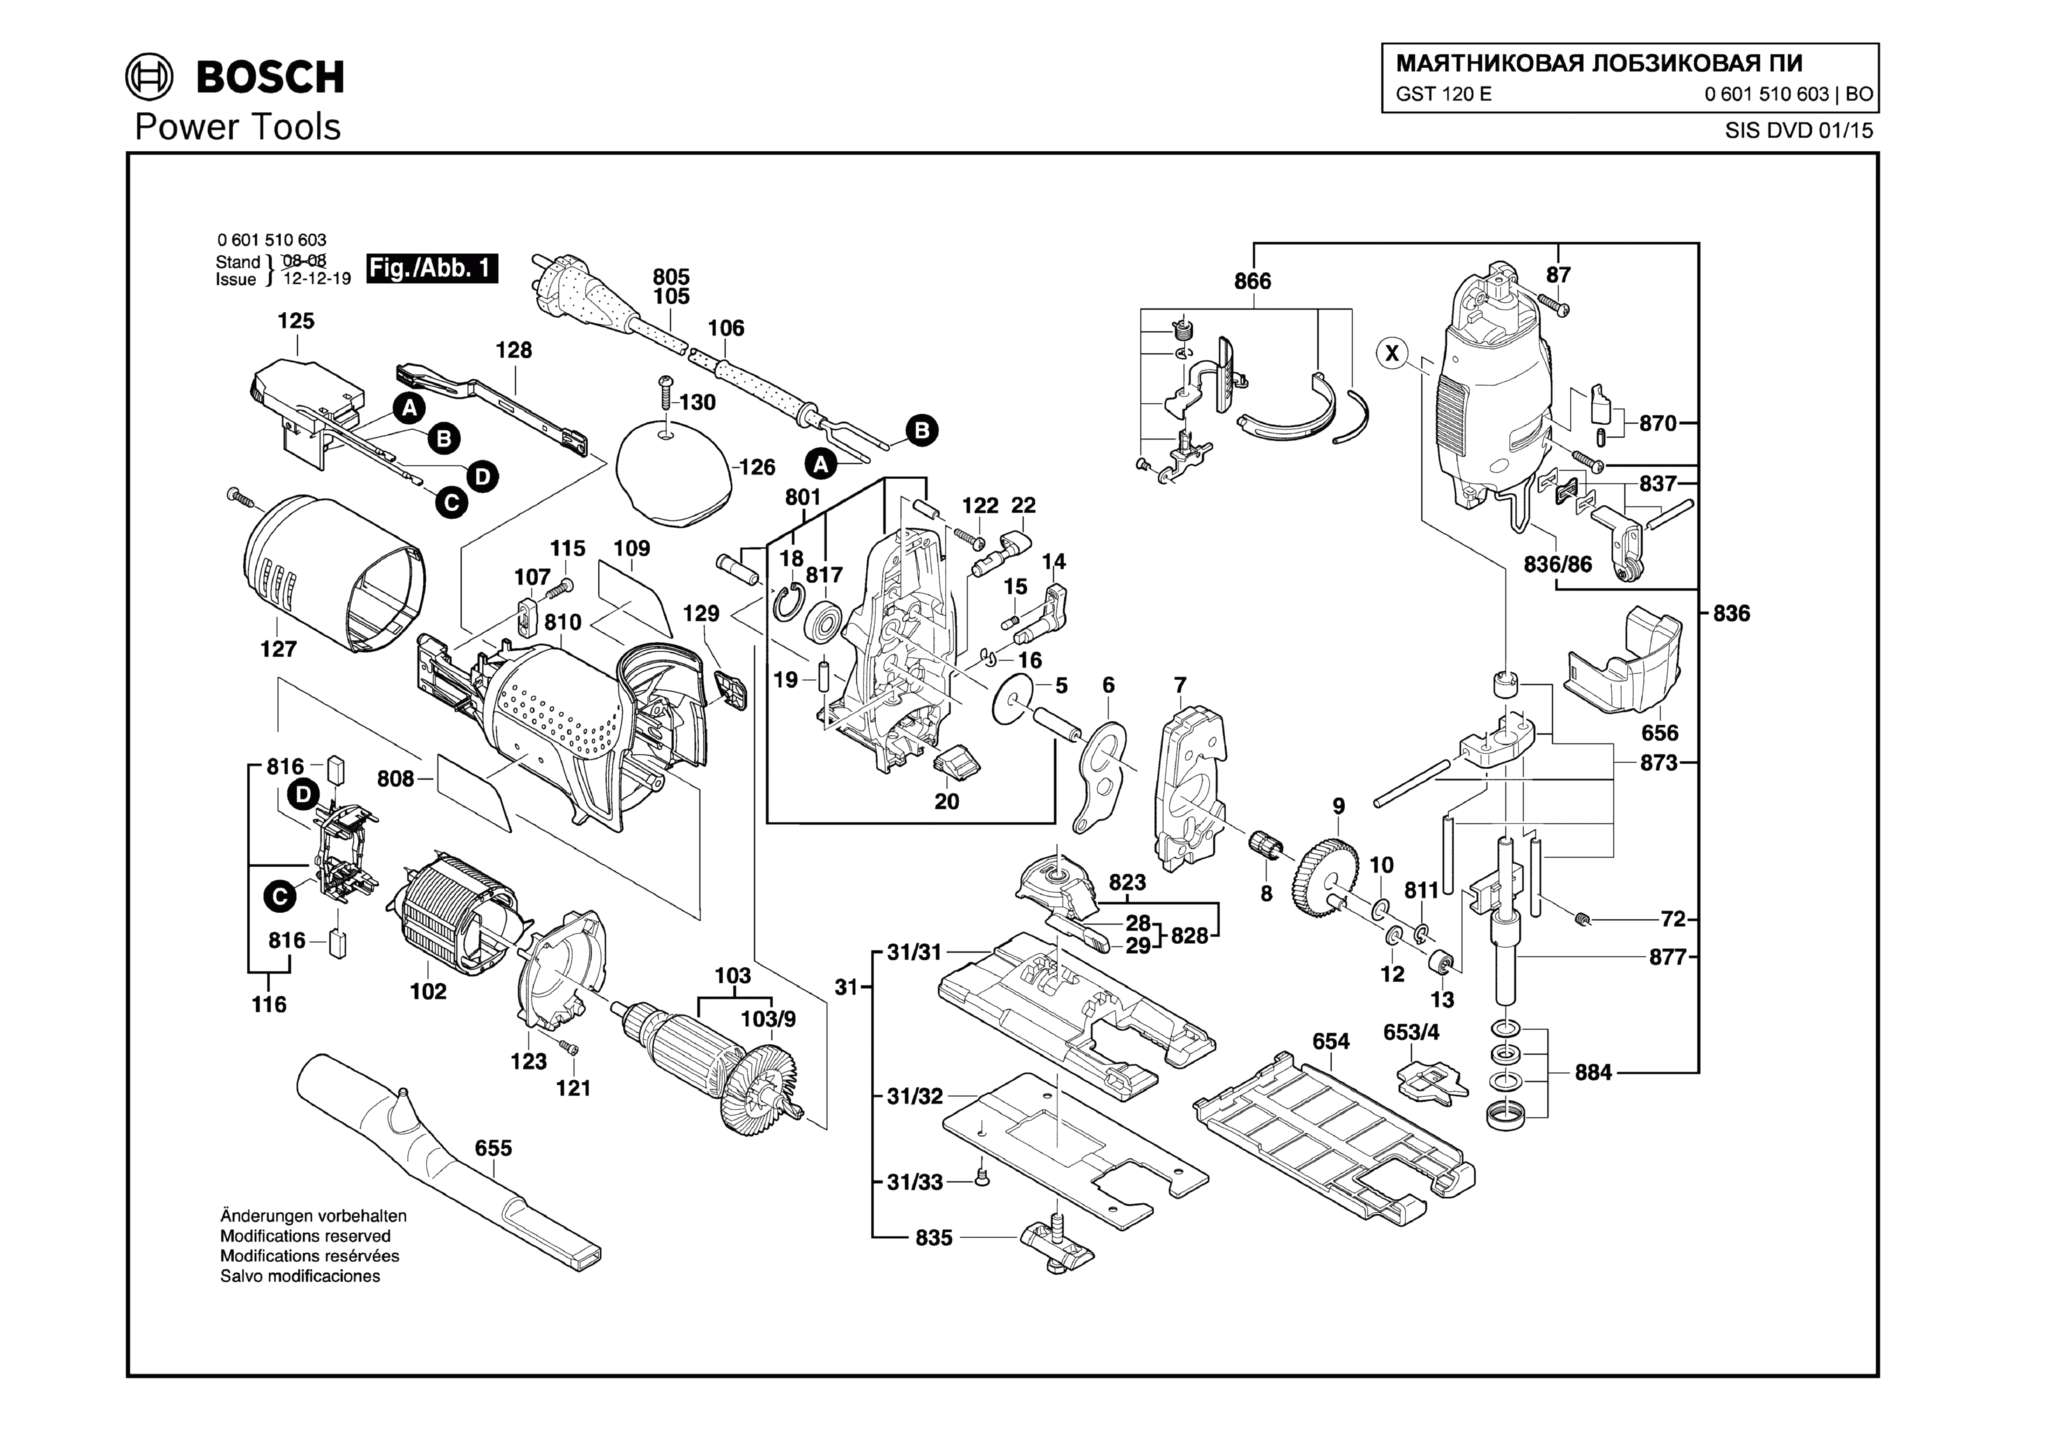 Запчасти, схема и деталировка Bosch GST 120 E (ТИП 0601510603)